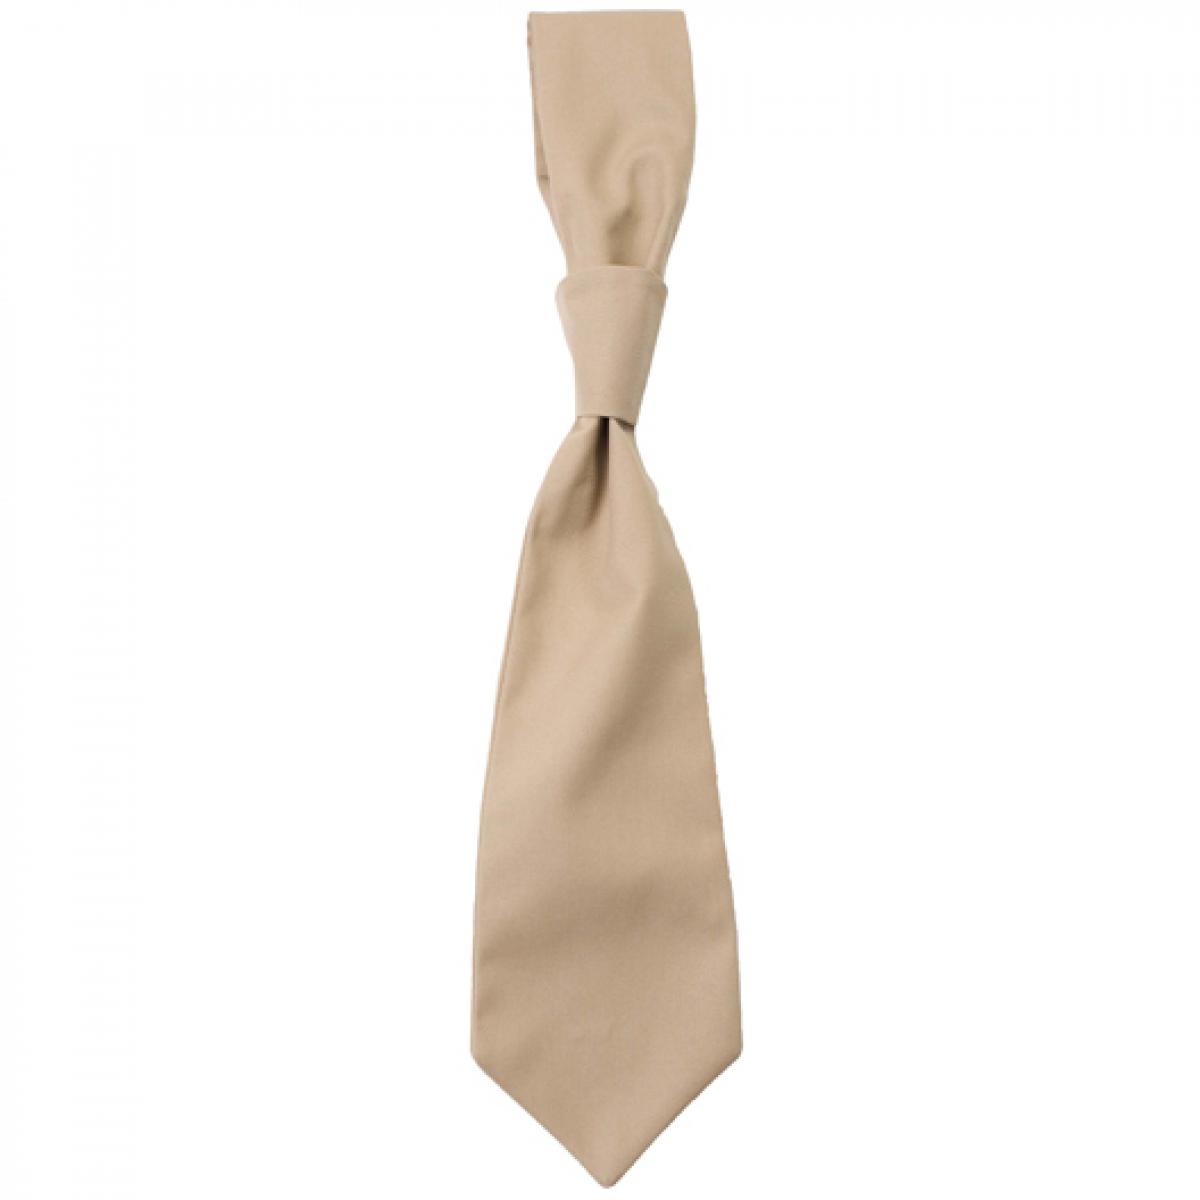 Hersteller: CG Workwear Herstellernummer: 01360-01 Artikelbezeichnung: Krawatte Messina / Zertifiziert nach Oeko-Tex 100 Farbe: Khaki